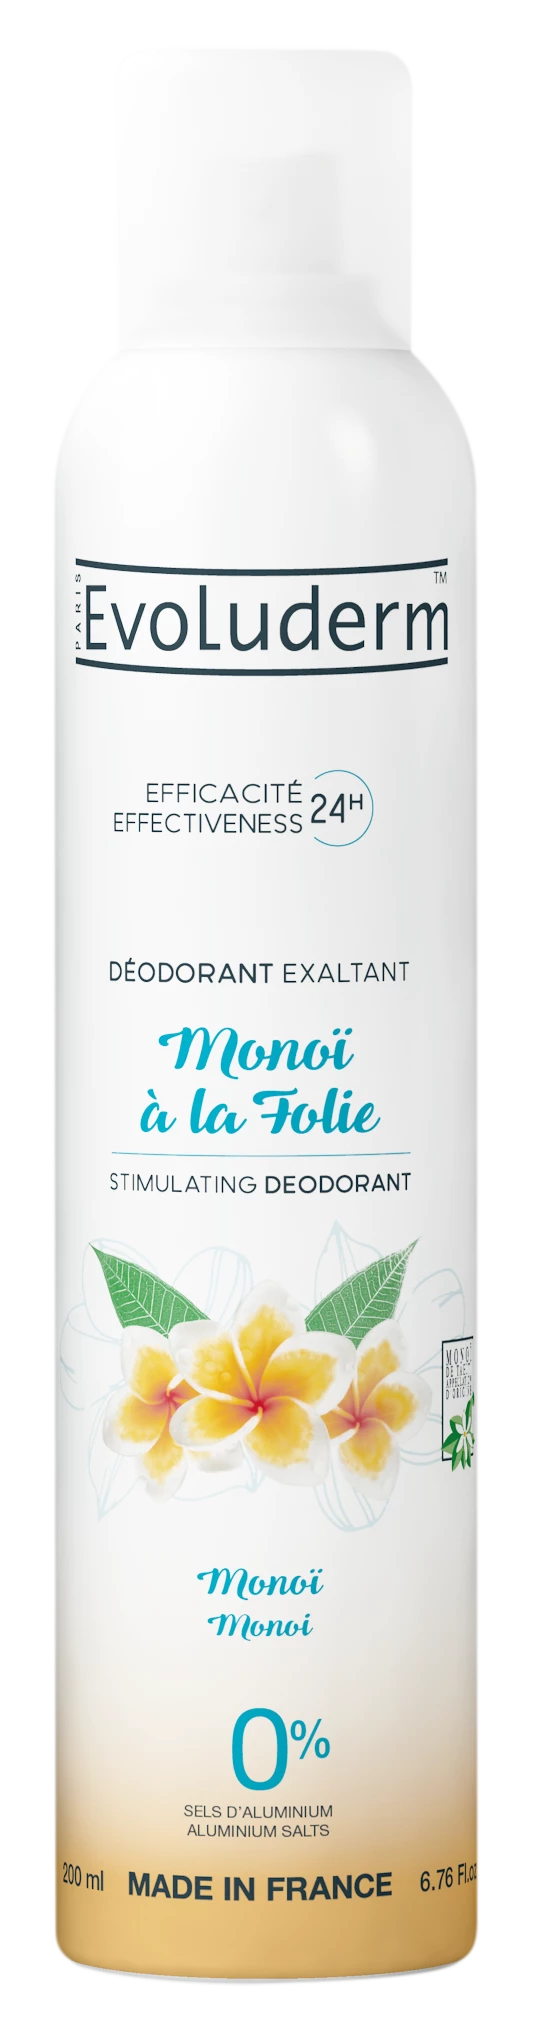 Desodorante Monoi à la Folie Monoï, 200ml - EVOLUDERM